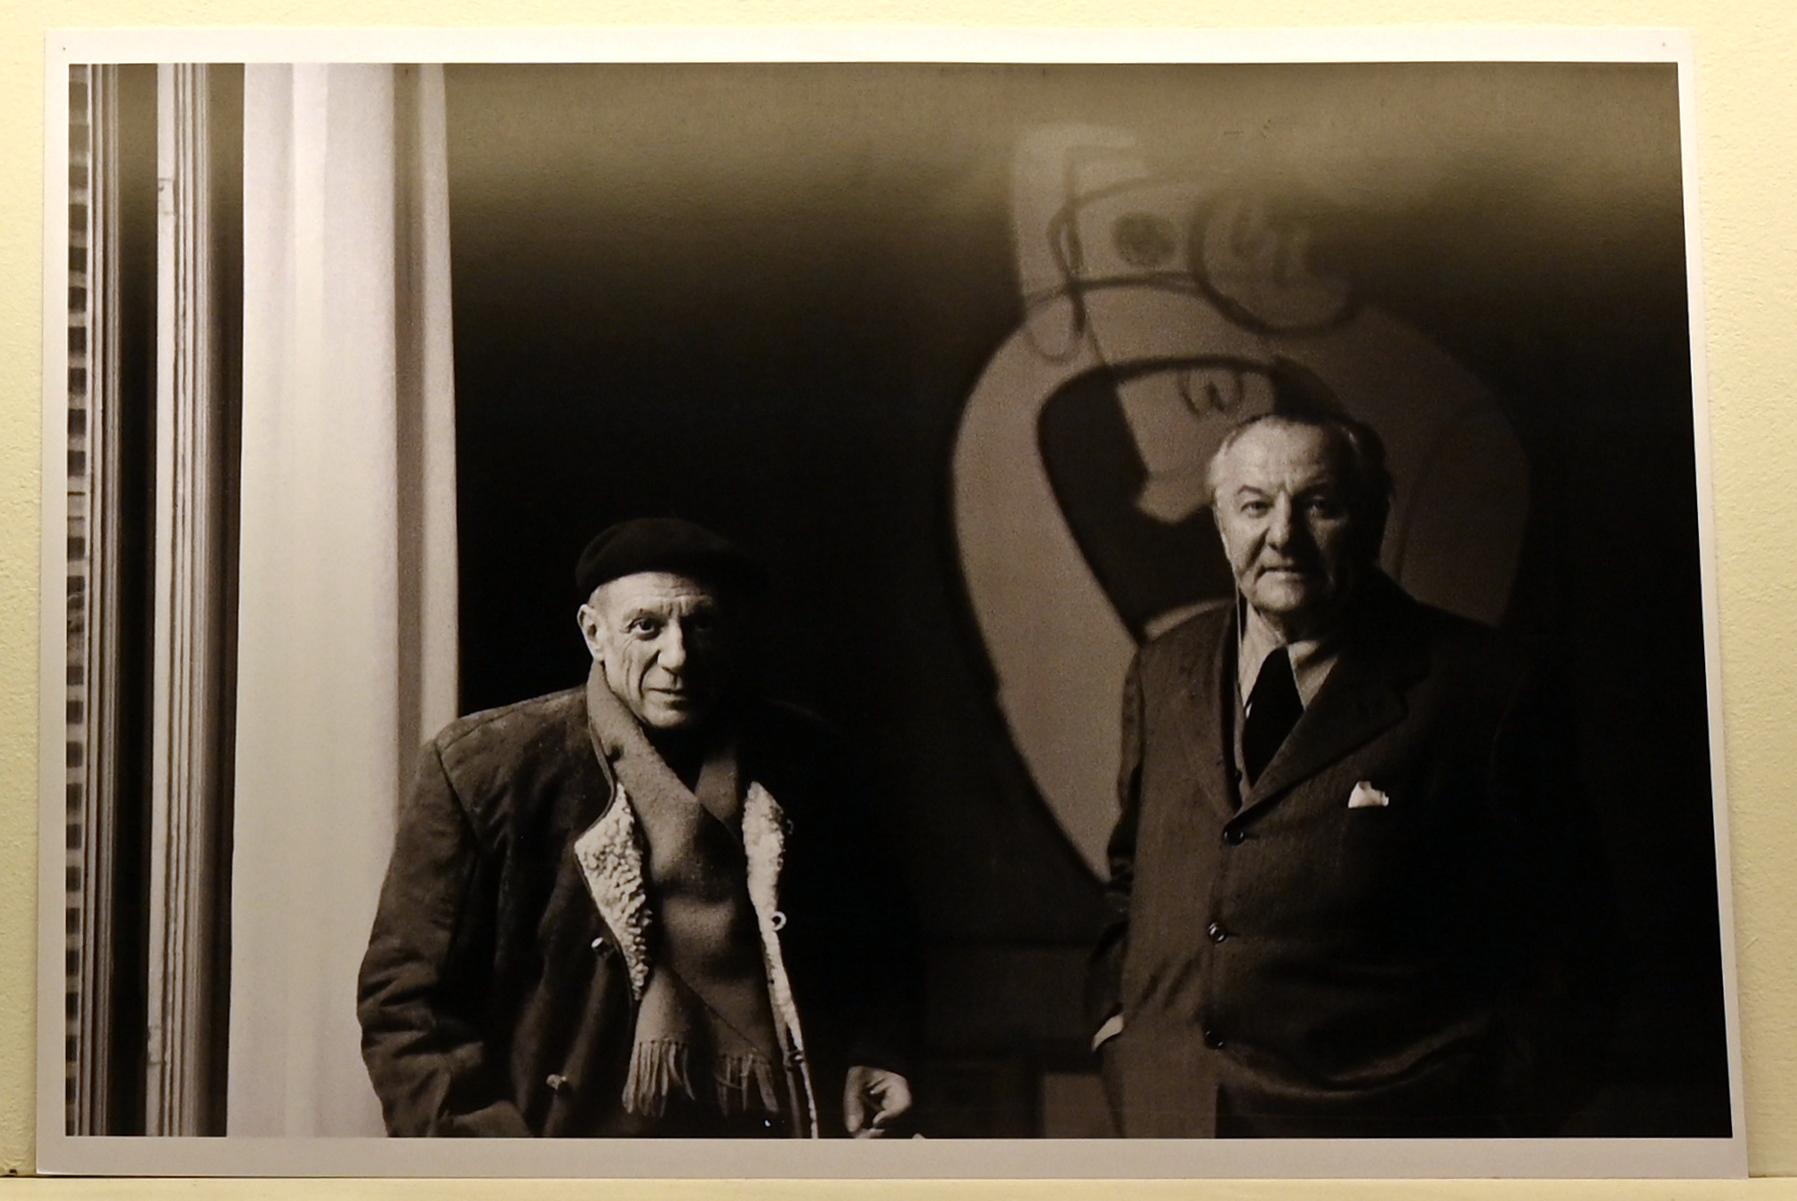 Hans Hofmann und Pablo Picasso in Hofmanns Ausstellung, Galerie Maeght, Paris, Neumarkt in der Oberpfalz, Museum Lothar Fischer, Ausstellung "Hans Hofmann. Chimbote 1950 - Farben für die neue Stadt" vom 23.10.2022-29.01.2023, 1949